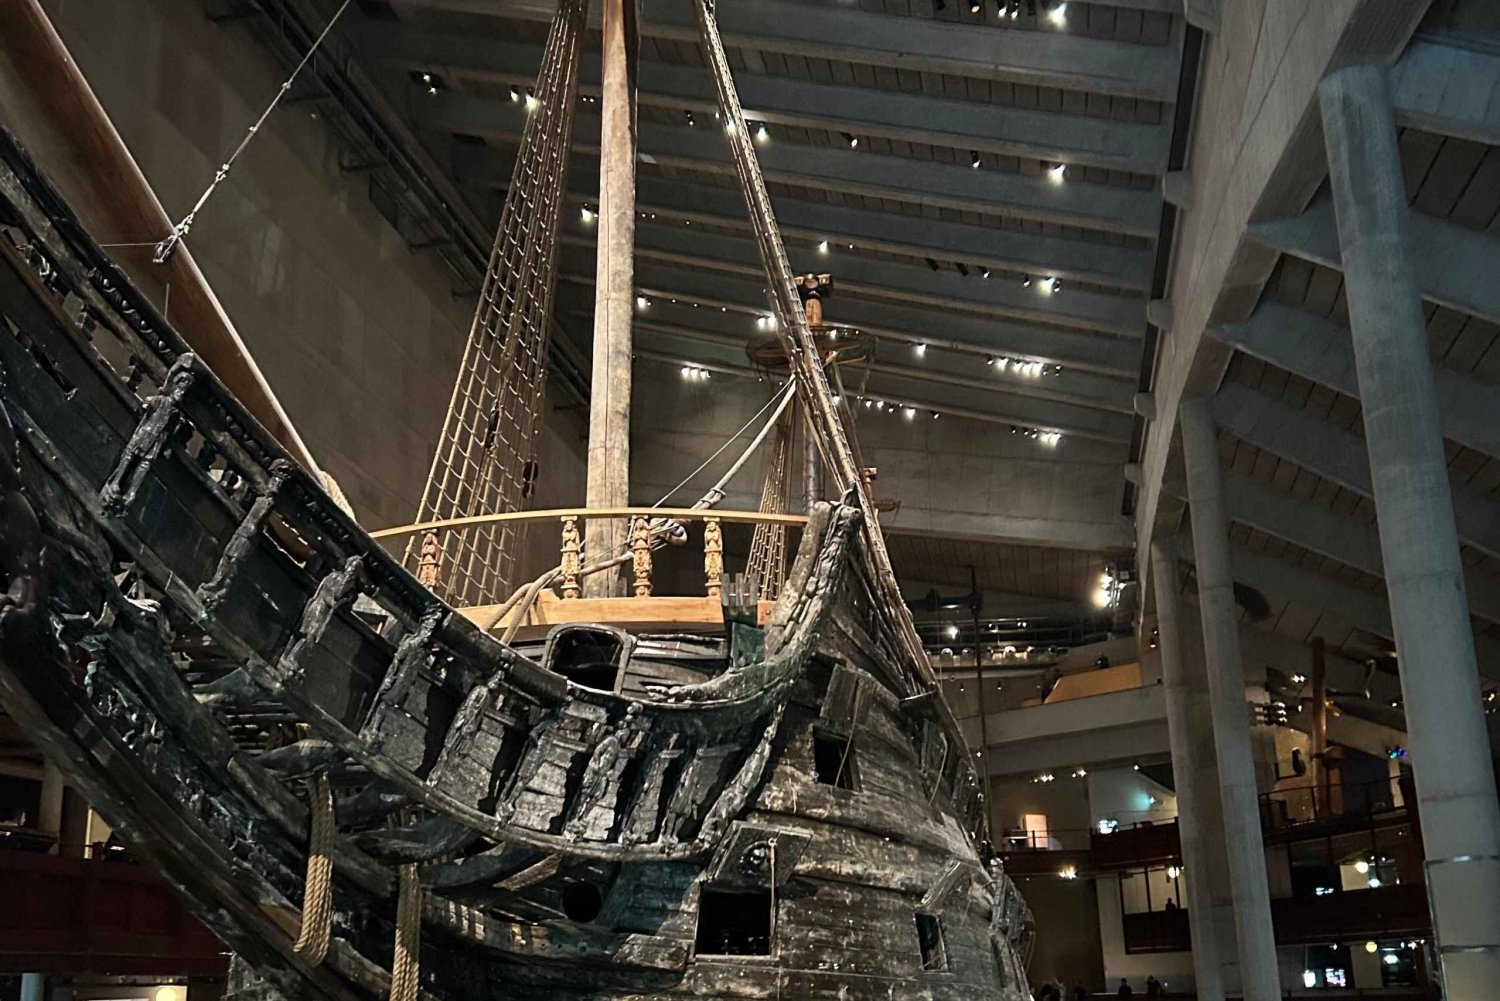 Stoccolma: Tour guidato del Museo Vasa, incluso il biglietto d'ingresso